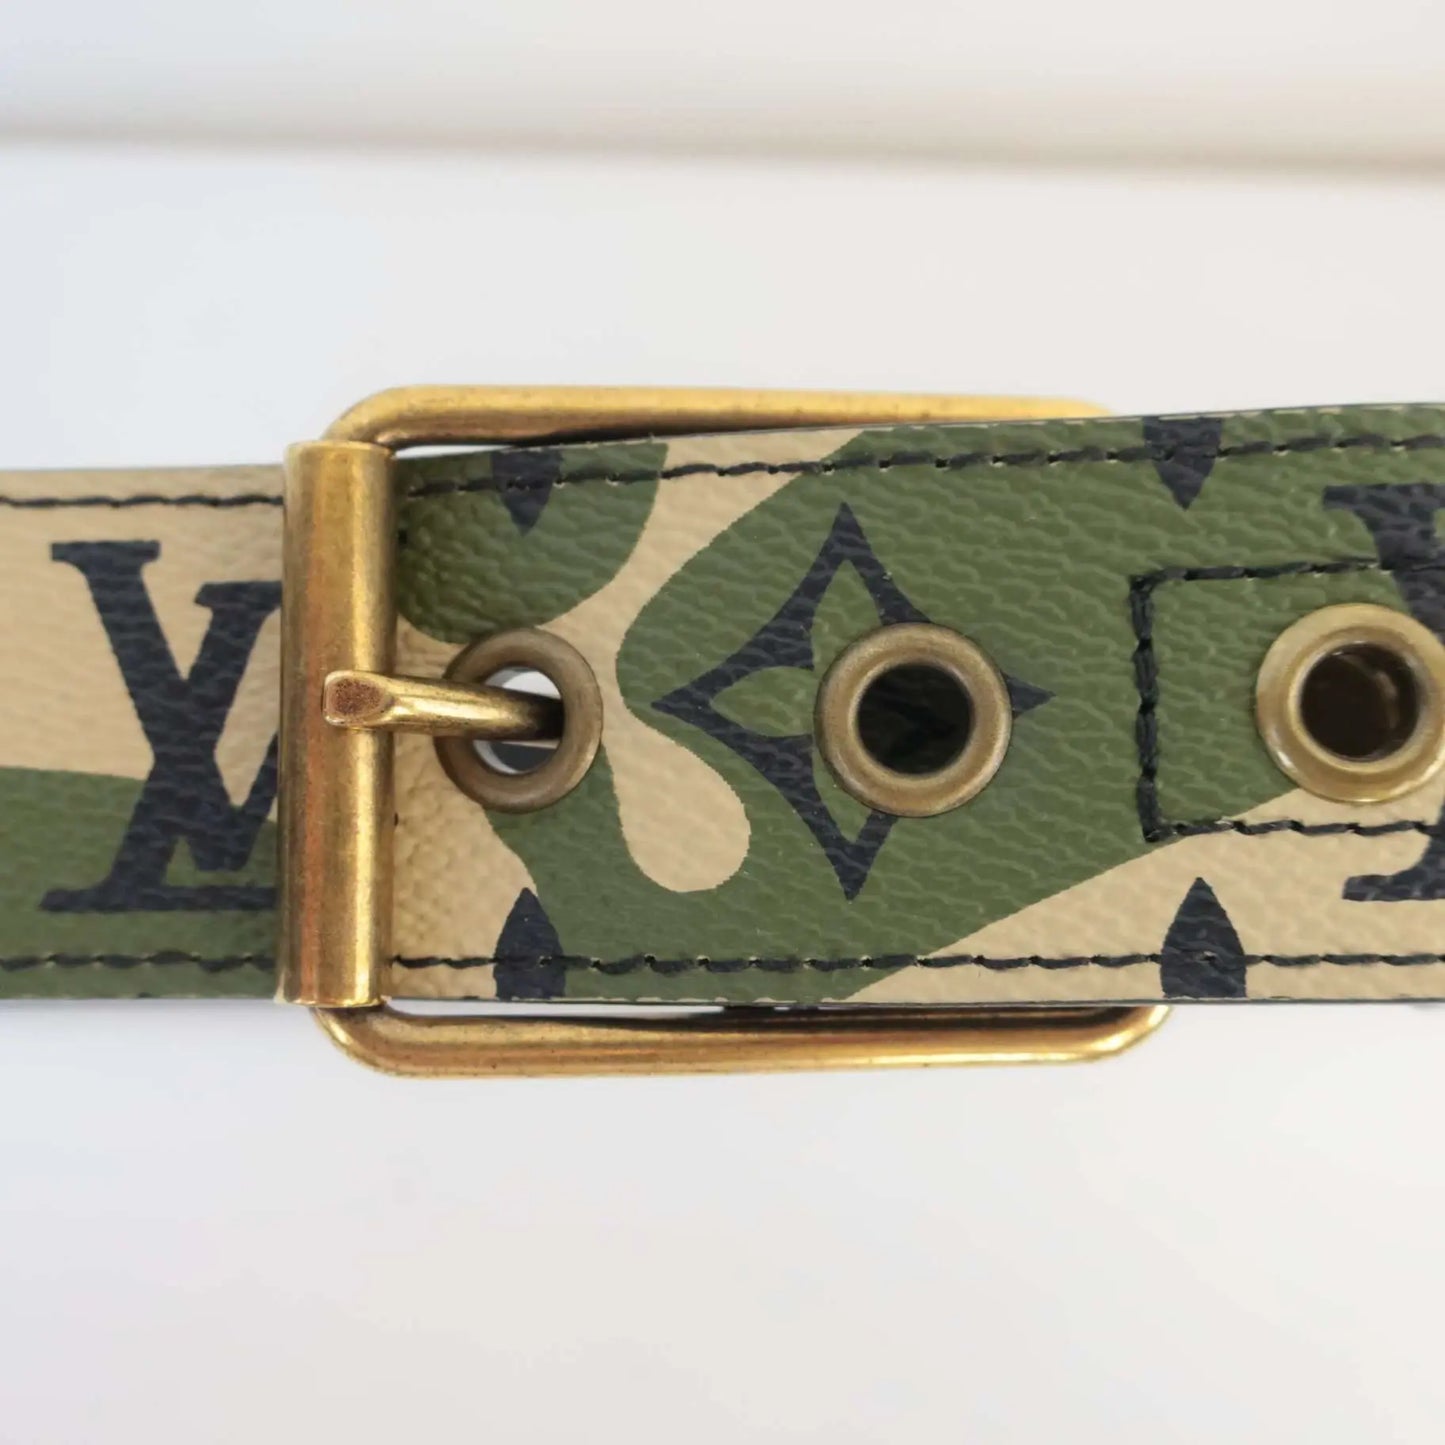 Green Louis Vuitton Takashi Murakami Monogramouflage Belt – Designer Revival